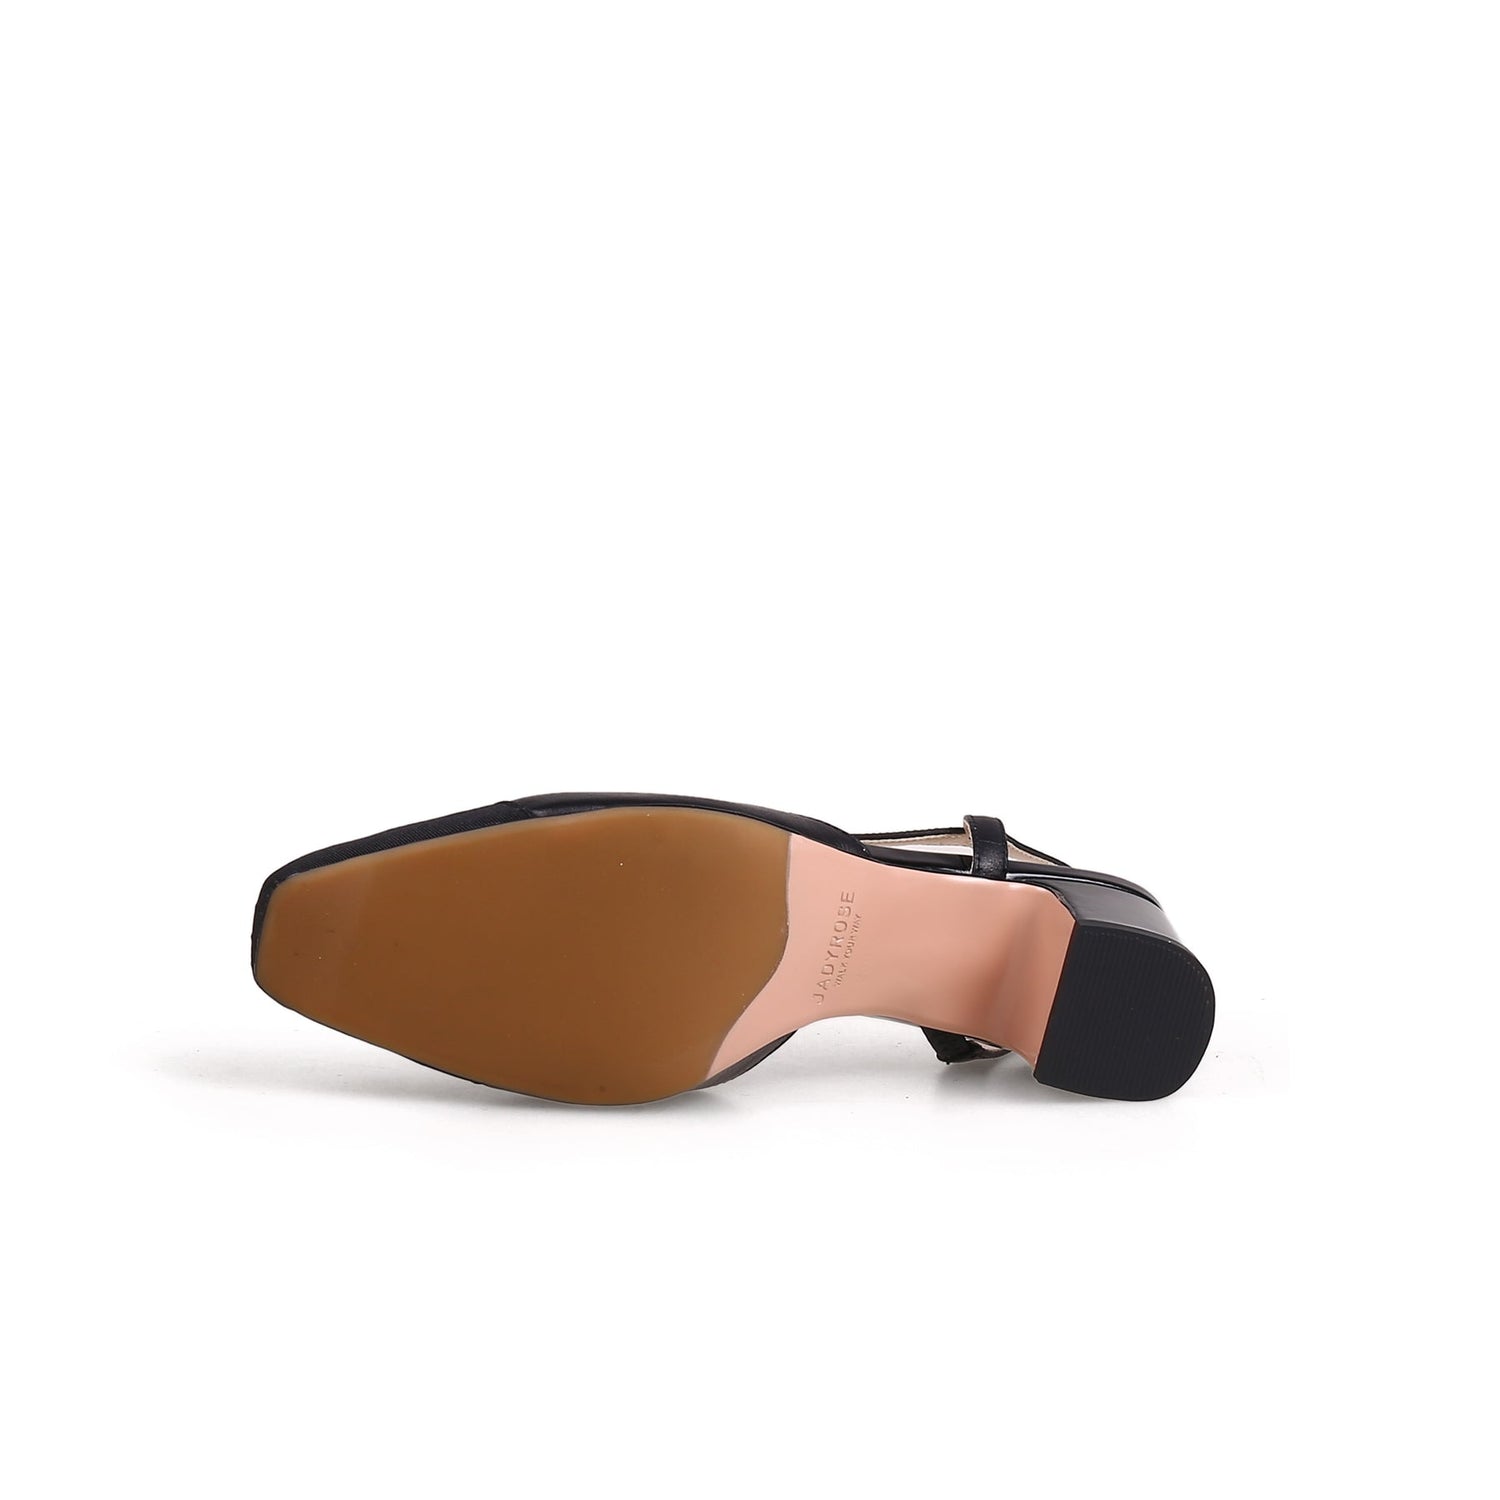 Classy Black Sandals - 0cm